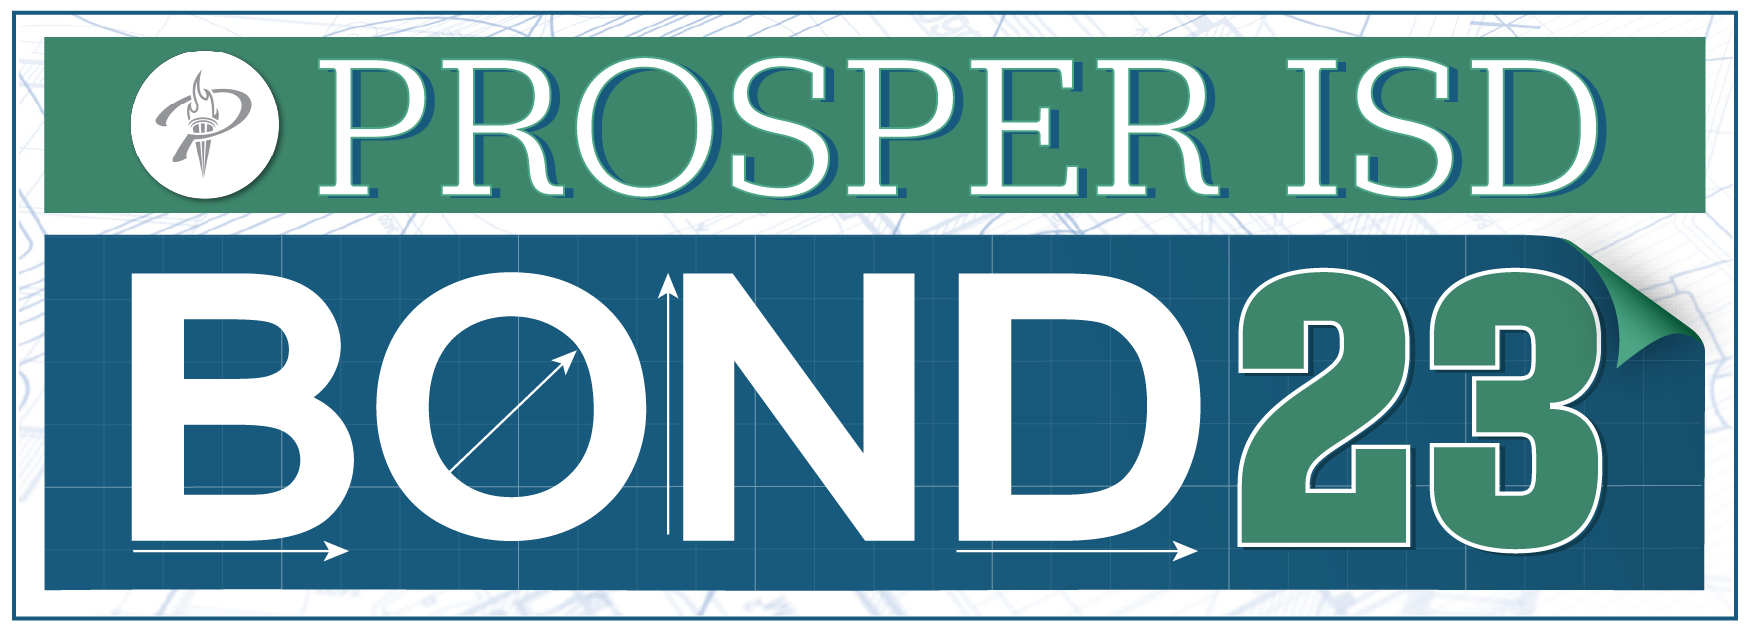 Prosper ISD 2023 Bond Program